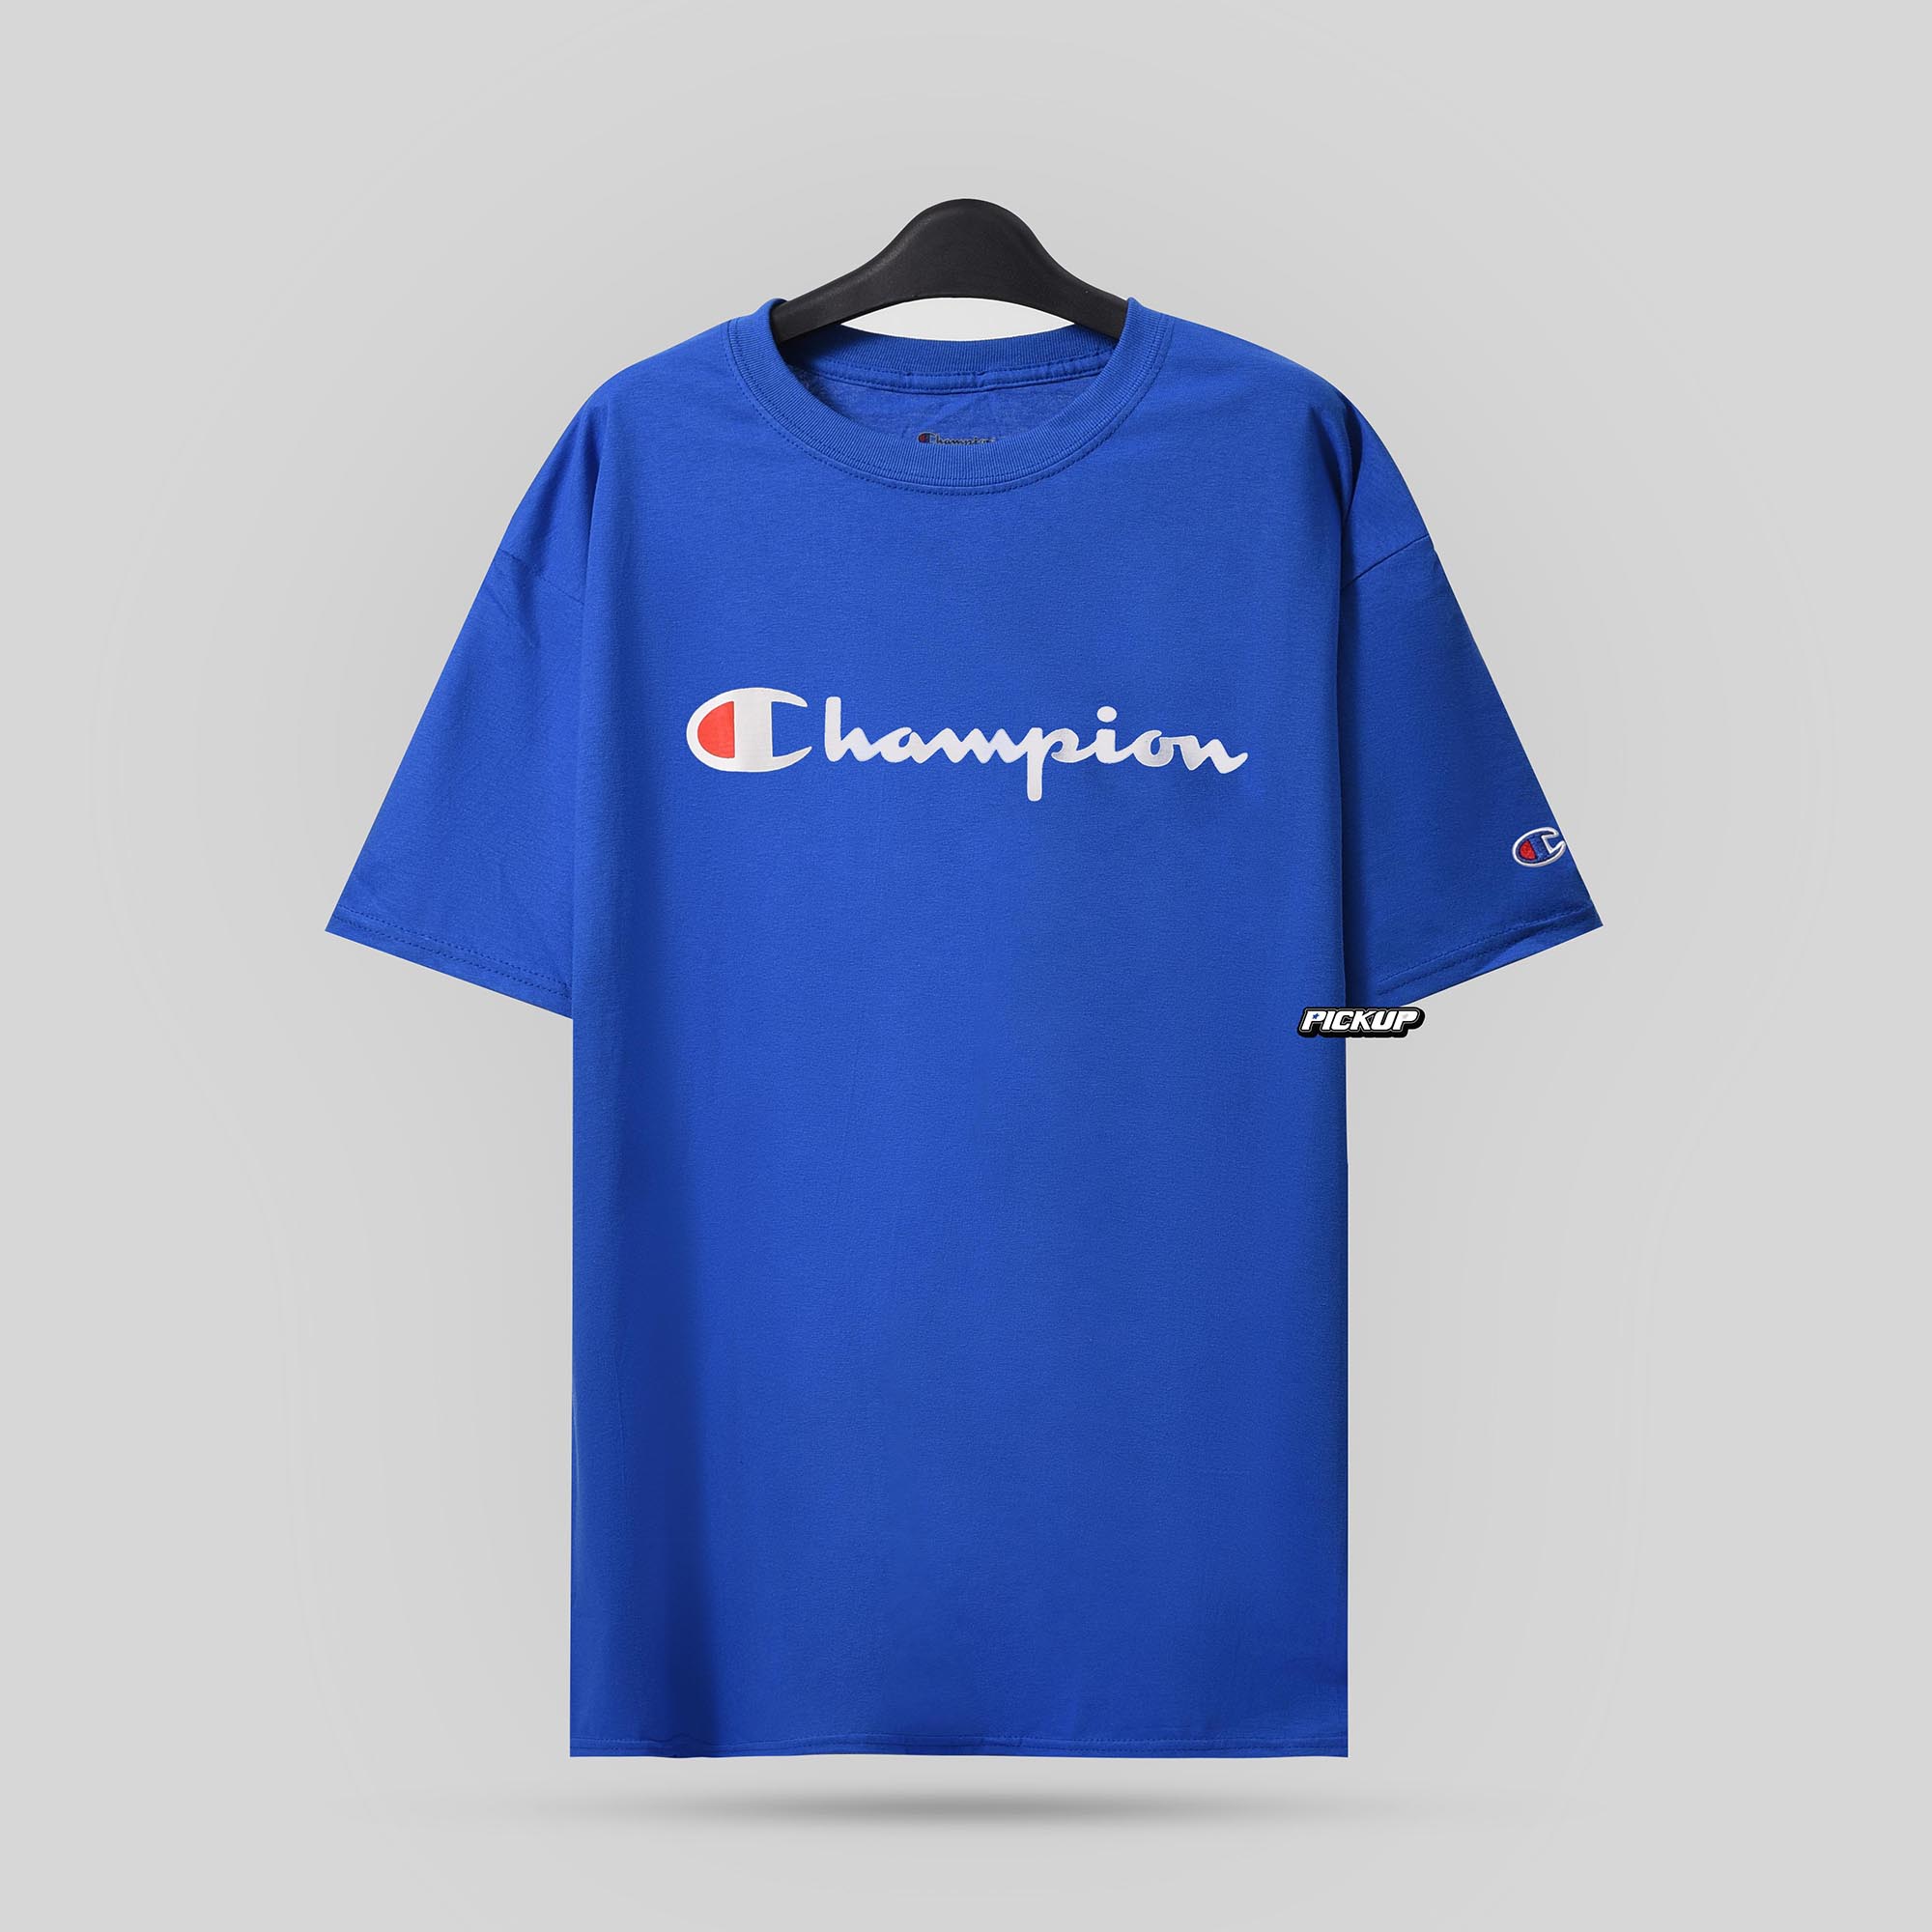 Champion Tagless Tshirt ,Printed Logo - Royal Blue